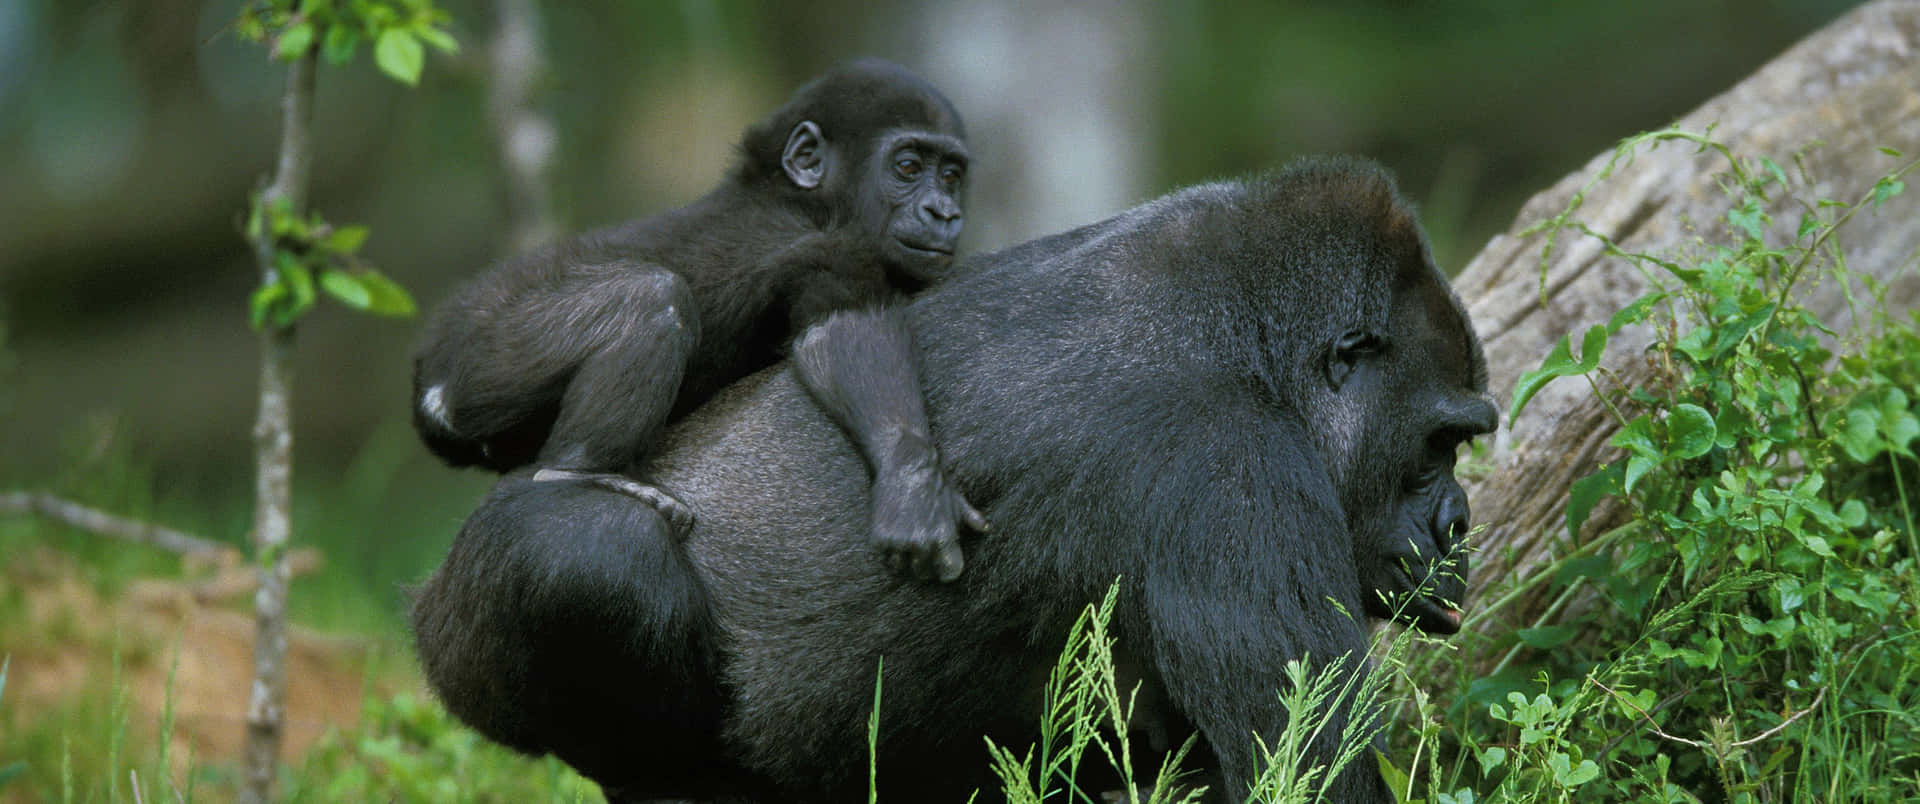 Fondode Pantalla De Gorila Madre Llevando A Su Bebé En Calidad 3440x1440p.